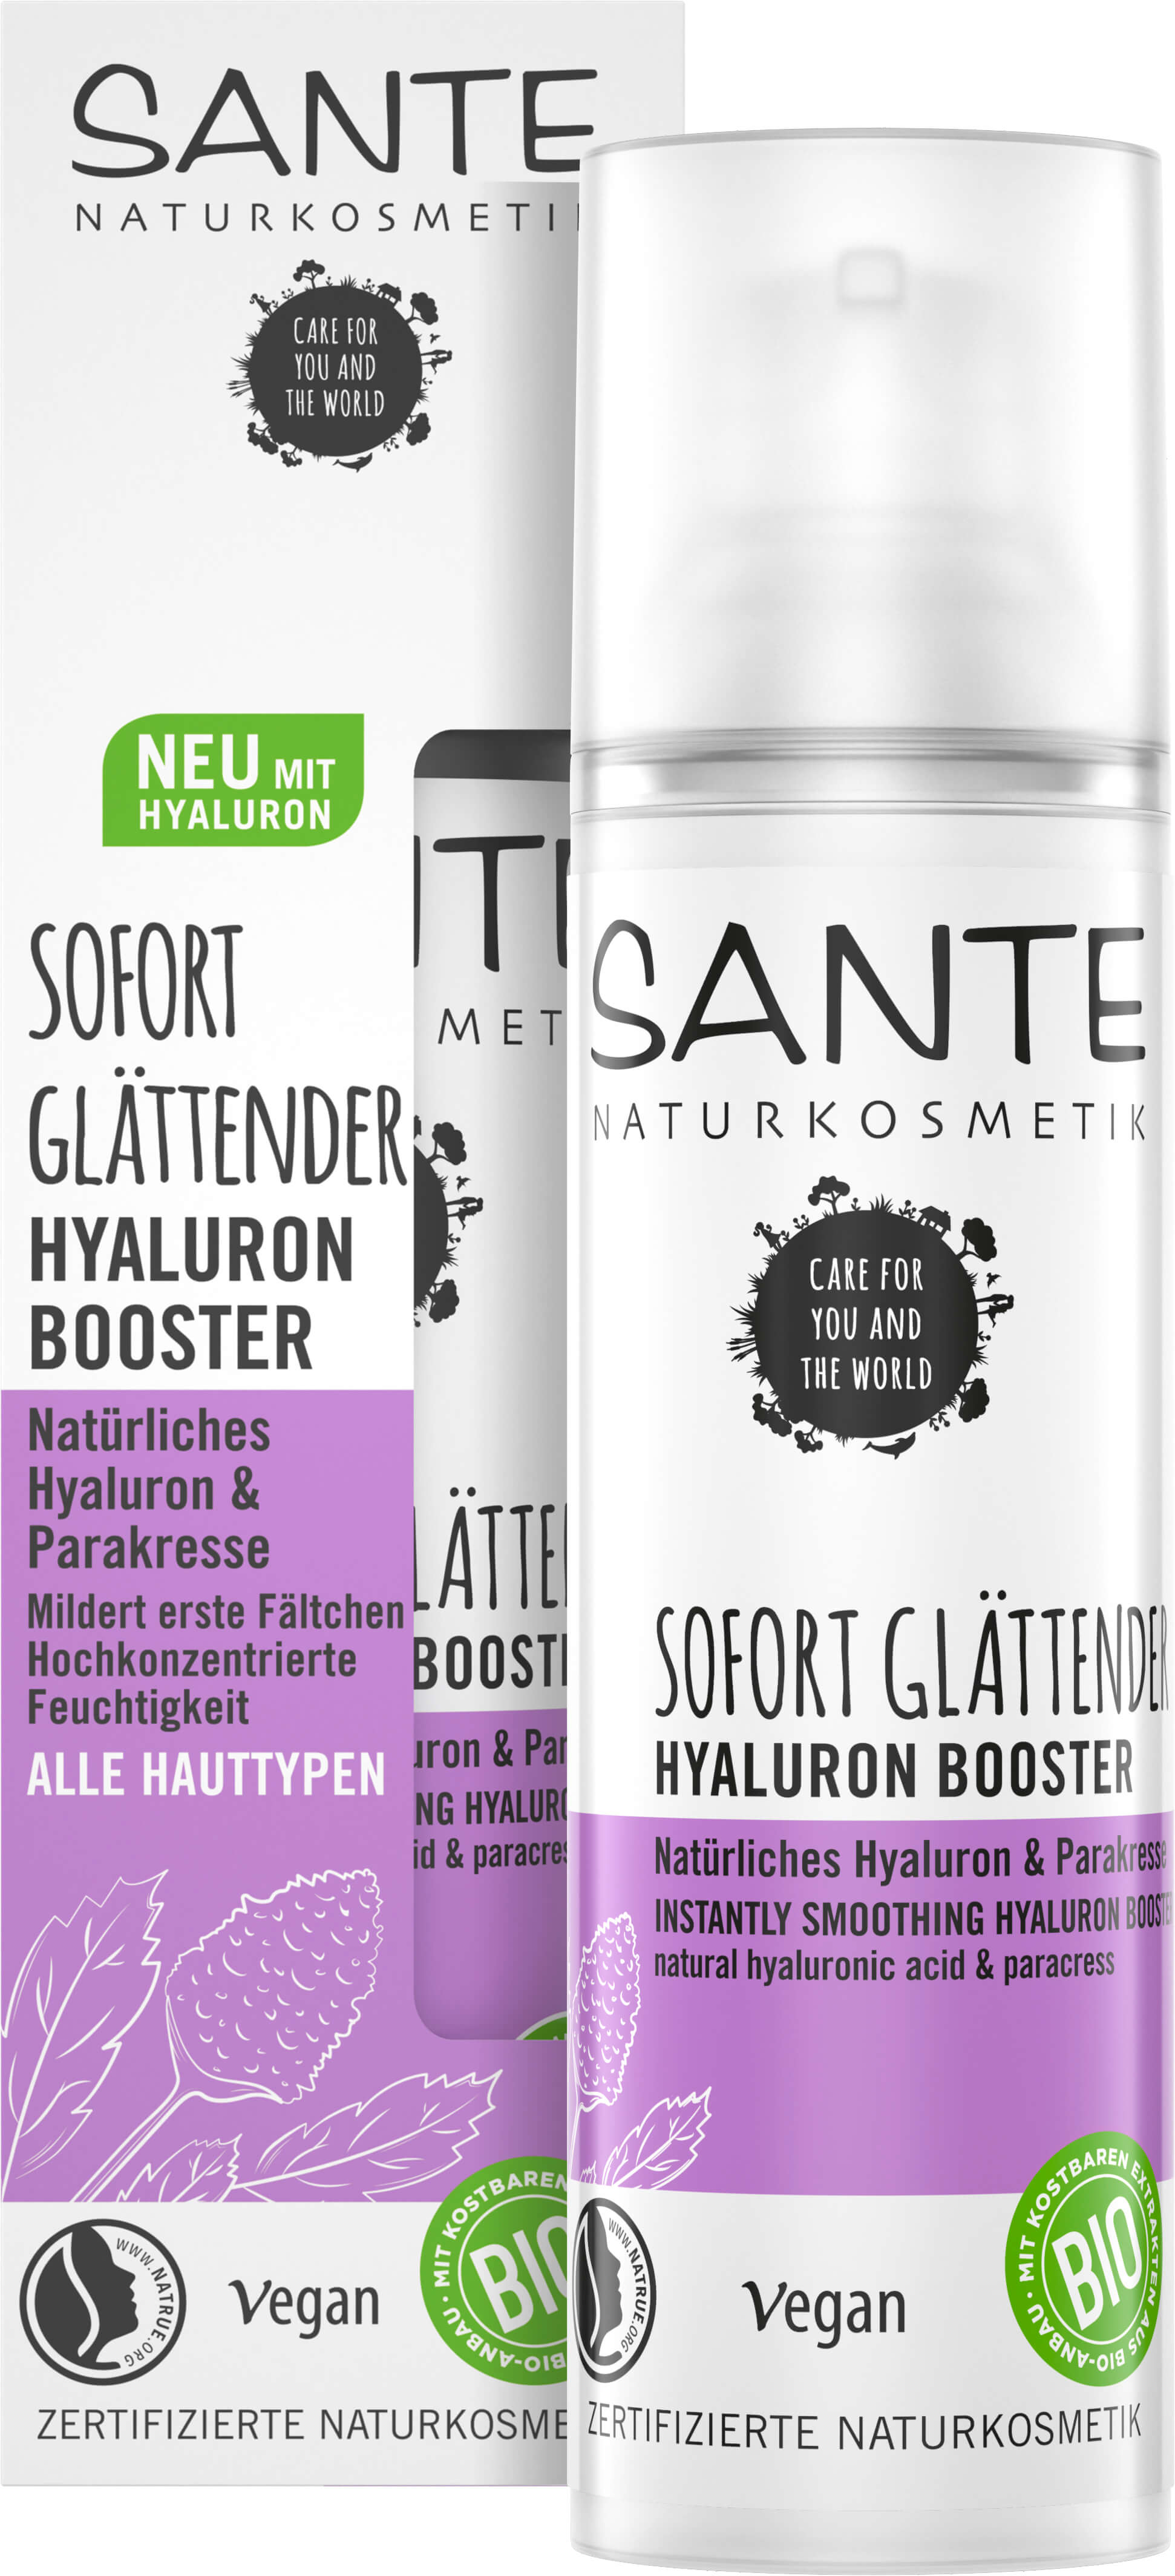 Sofort Glättender Hyaluron Booster Natürliches Hyaluron & Naturkosmetik | SANTE Parakresse